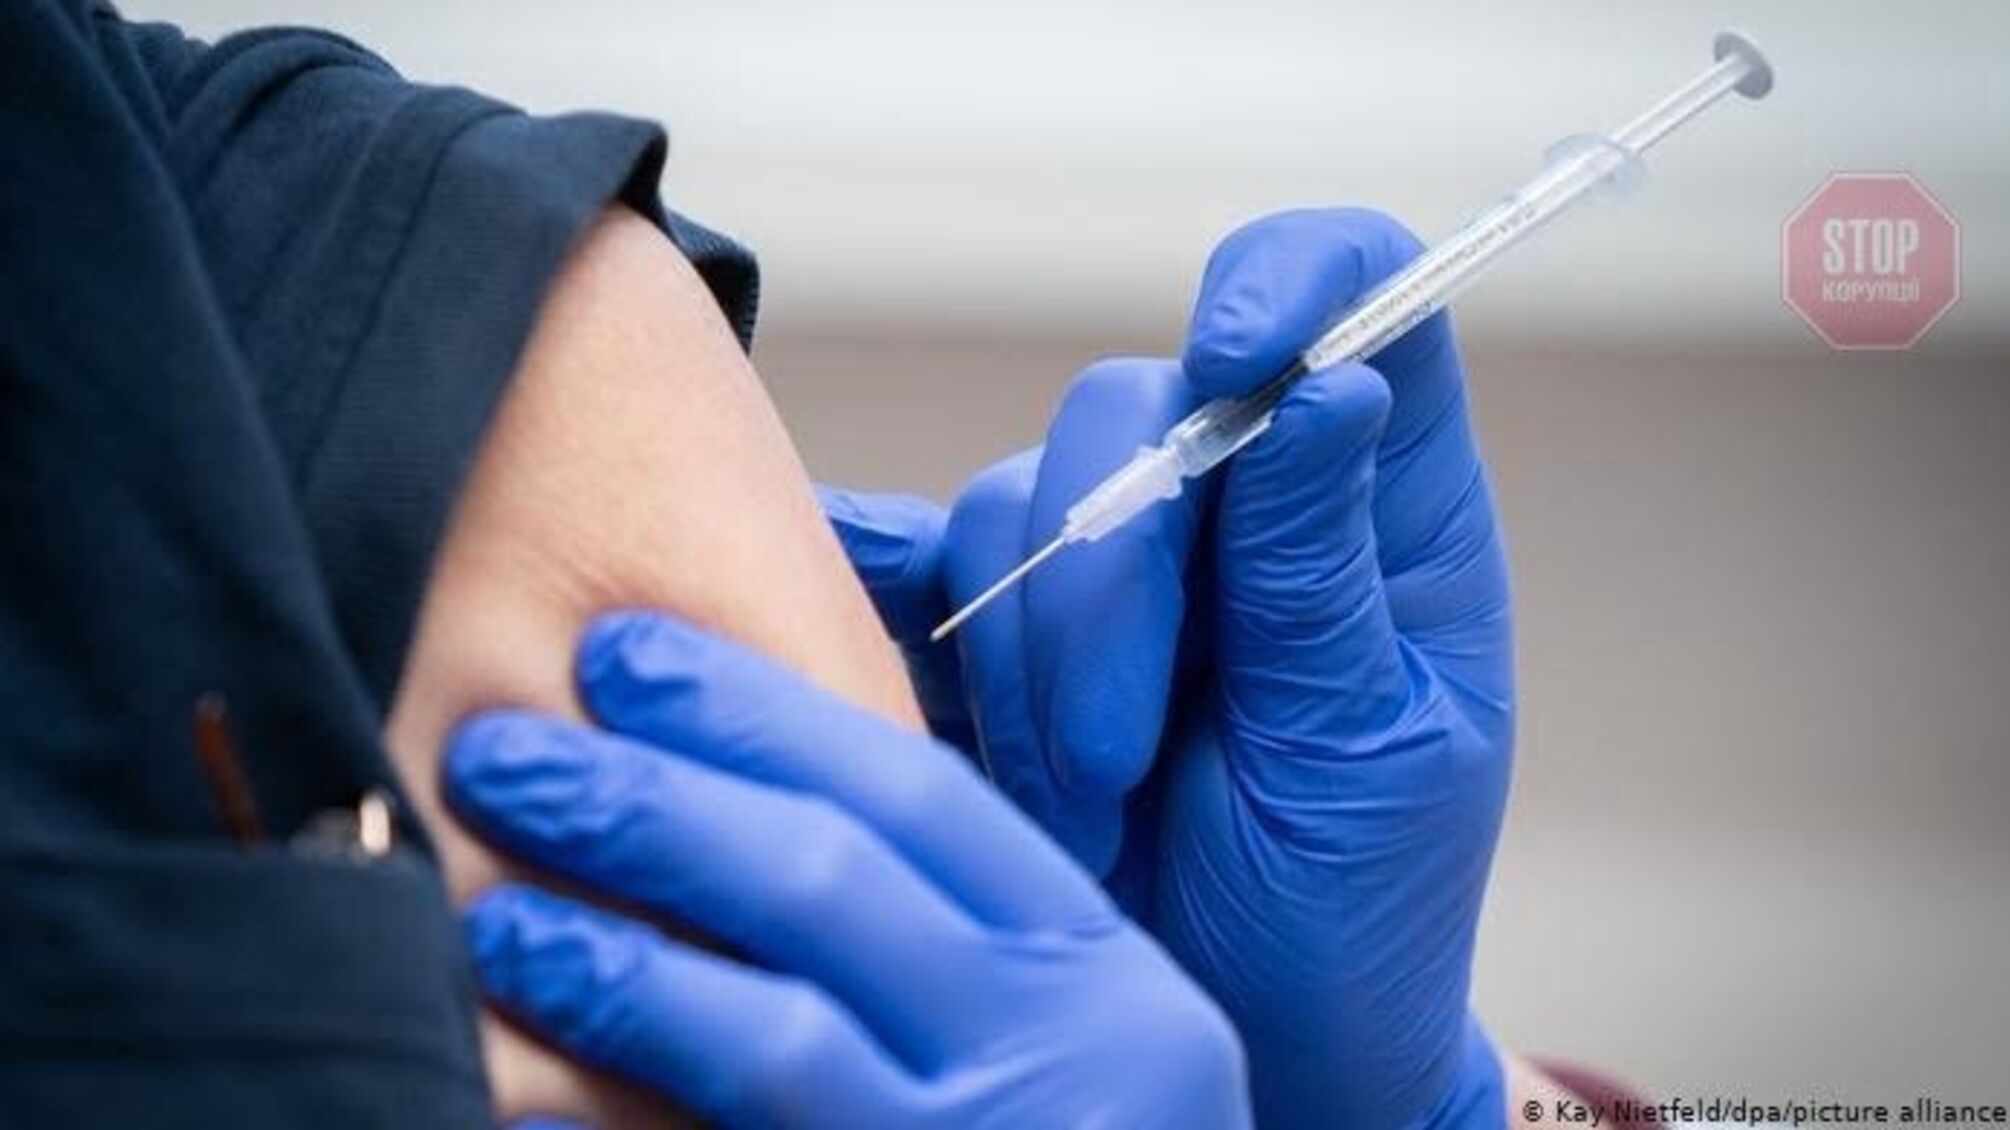 Євросоюз перегнав США за відсотком вакцинованих проти COVID-19 громадян 